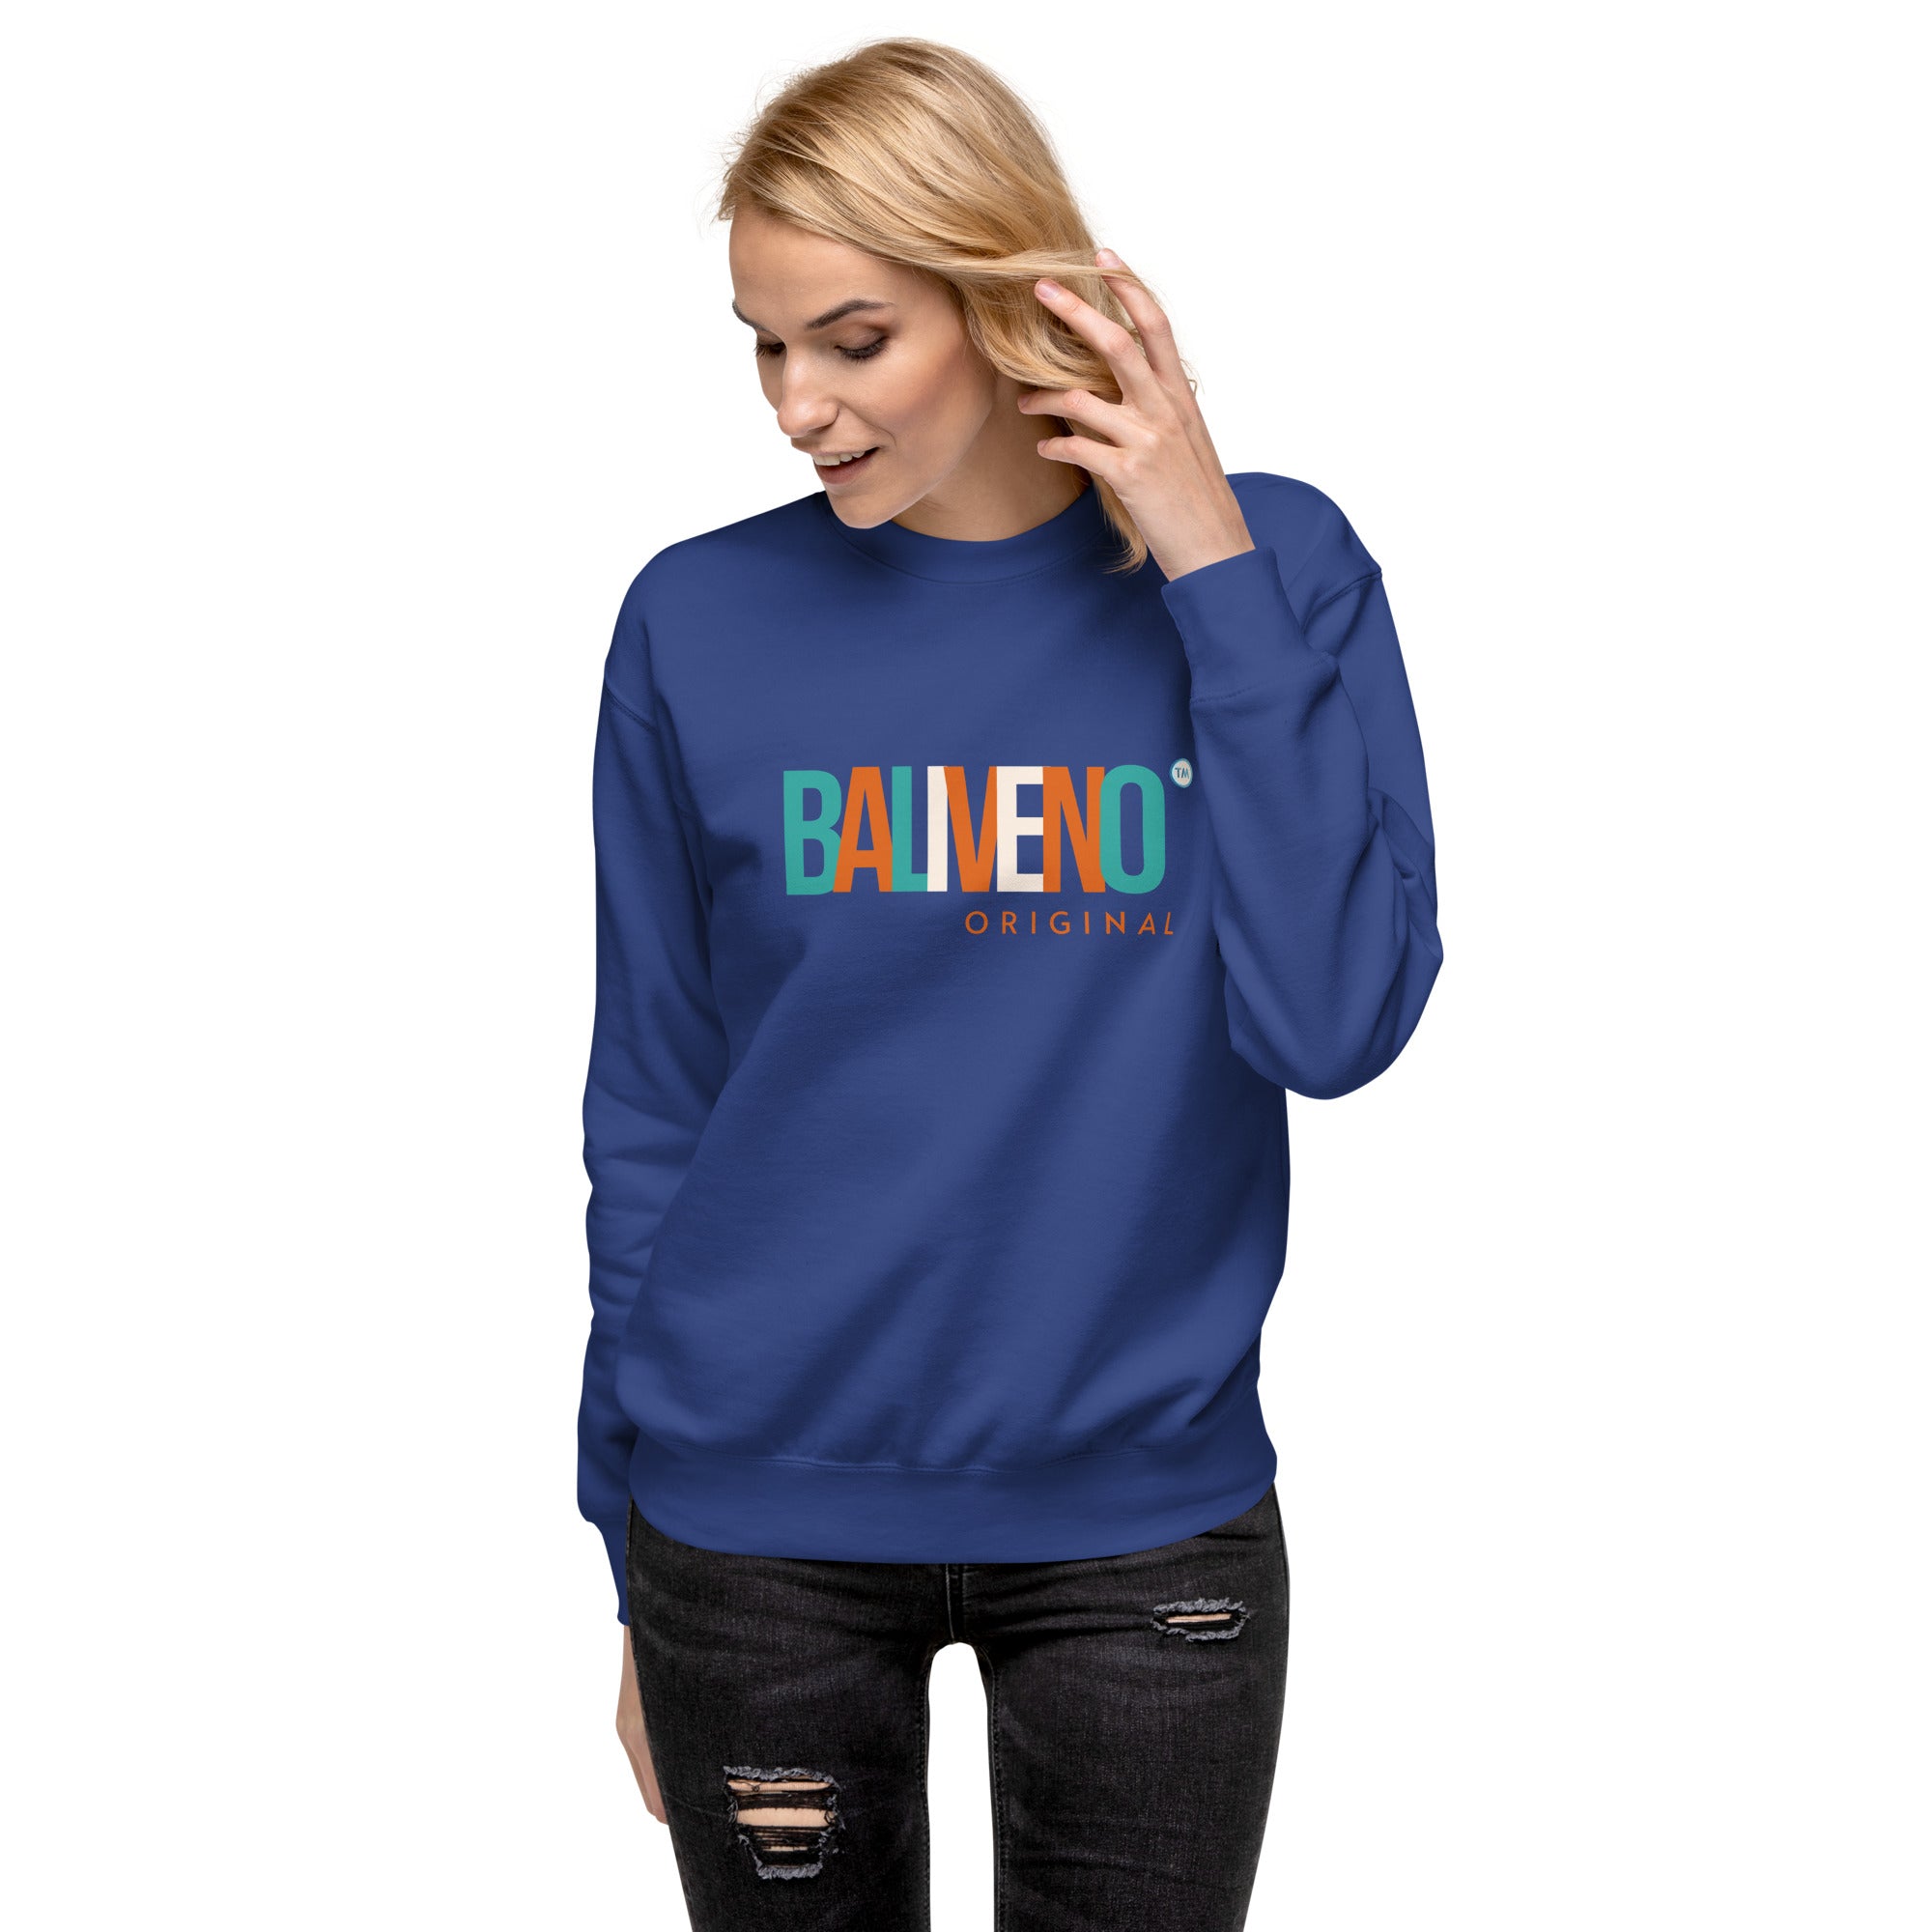 Baliveno Unisex Sweatshirt, Printed Sweatshirt, Baliveno Fashion, Cotton Sweatshirt,